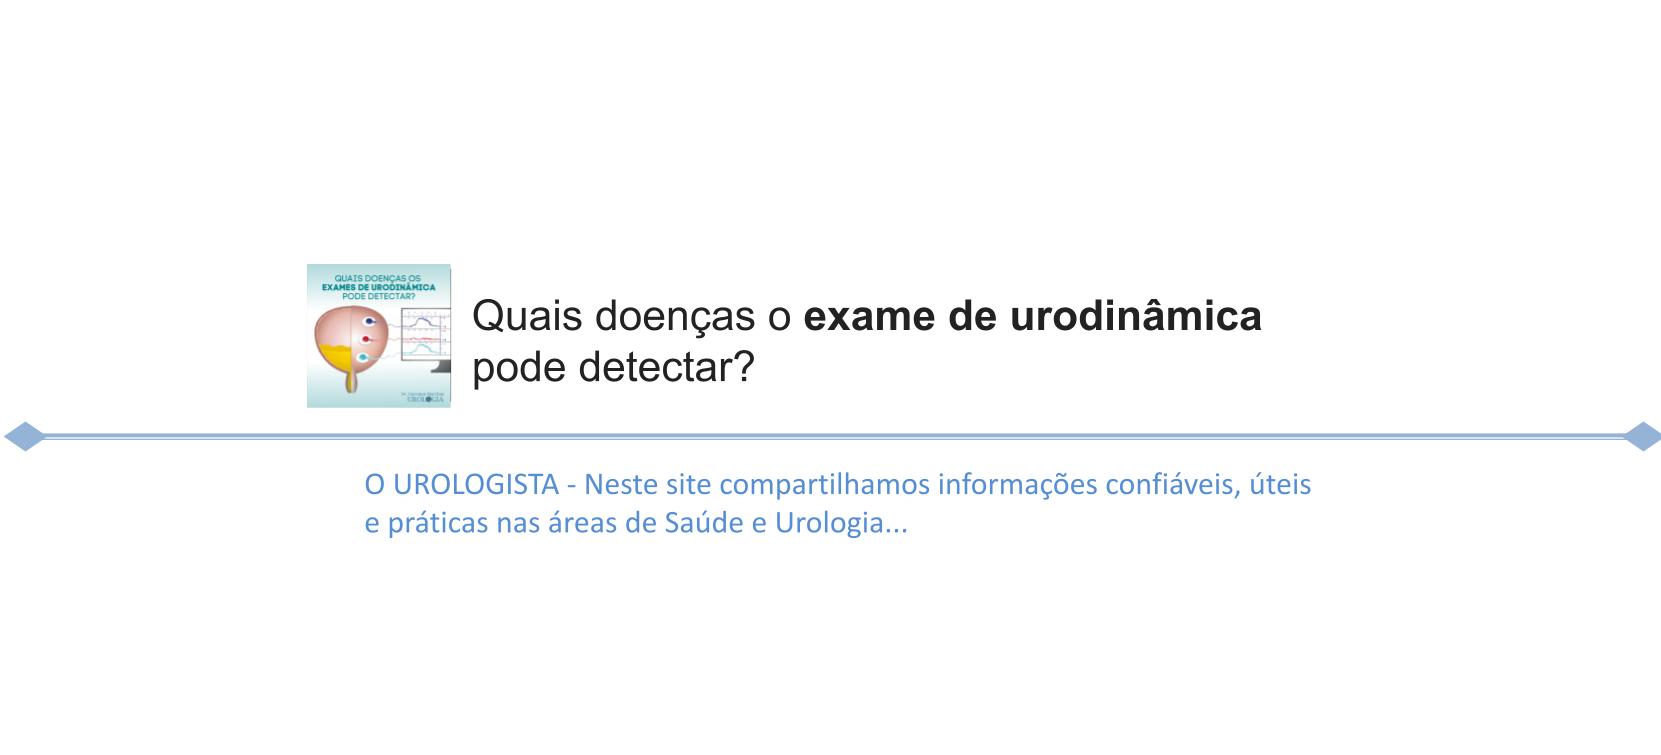 Quais doenças o exame de urodinâmica pode detectar?